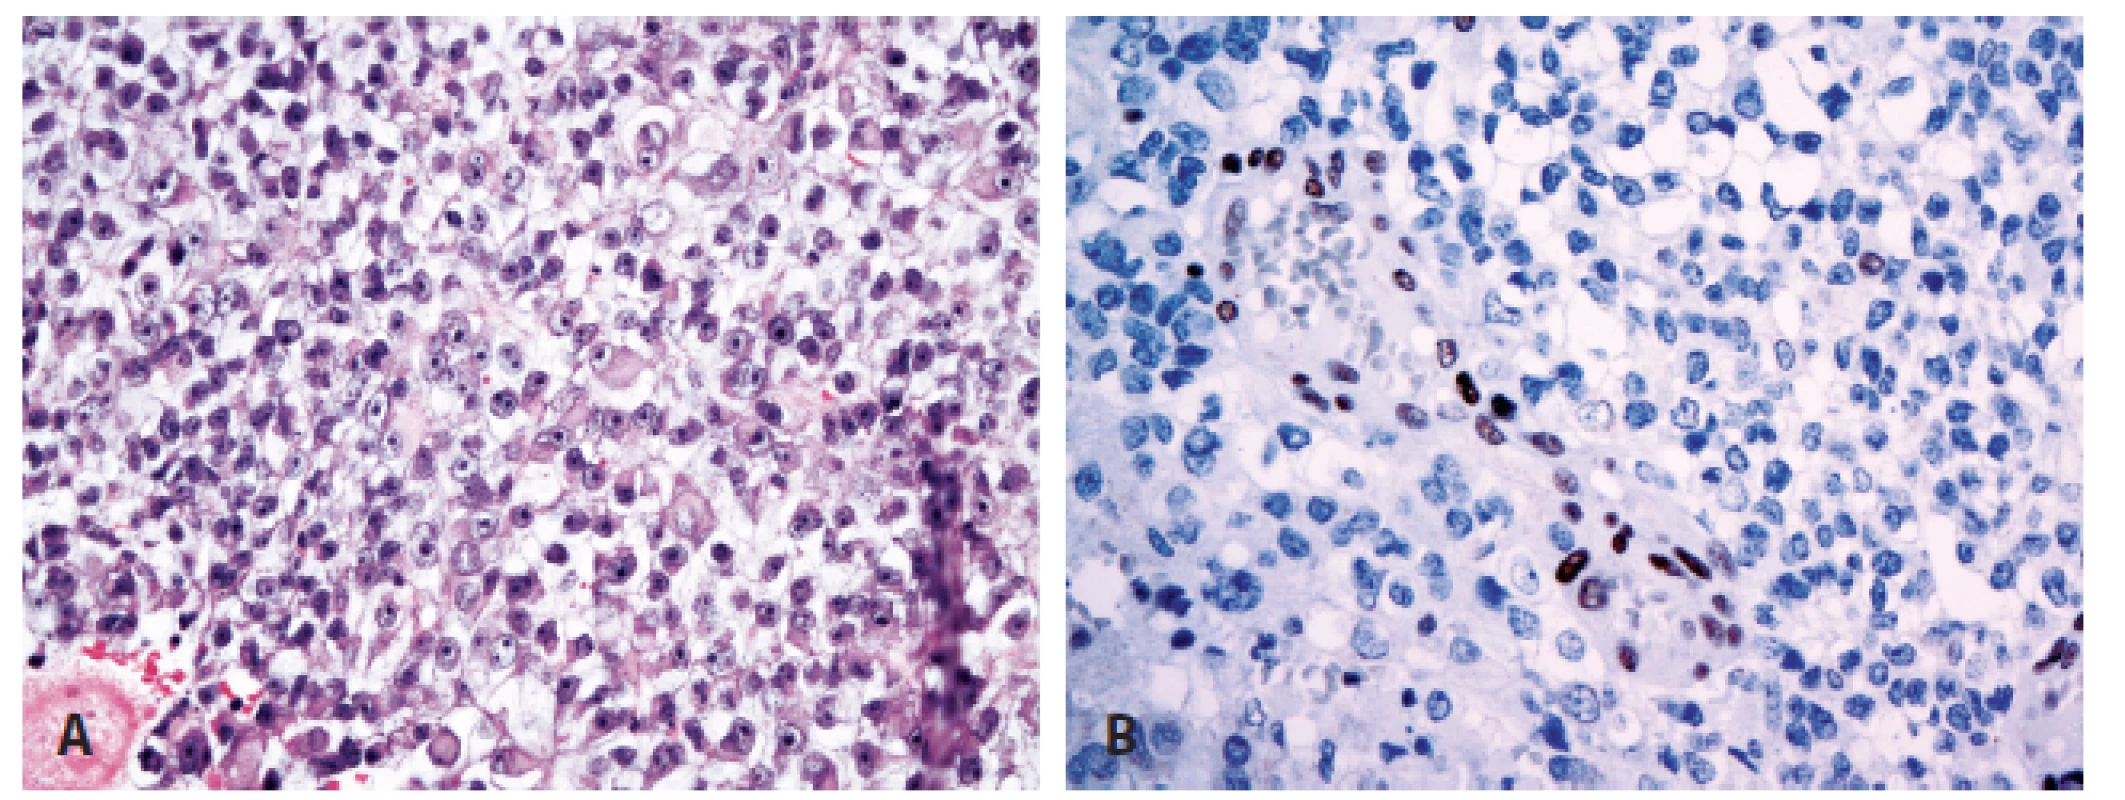 Atypický teratoidní/rhabdoidní nádor (A) se ztrátou imunoexprese INI1 proteinu při pozitivní vnitřní kontrole (B) (400x).